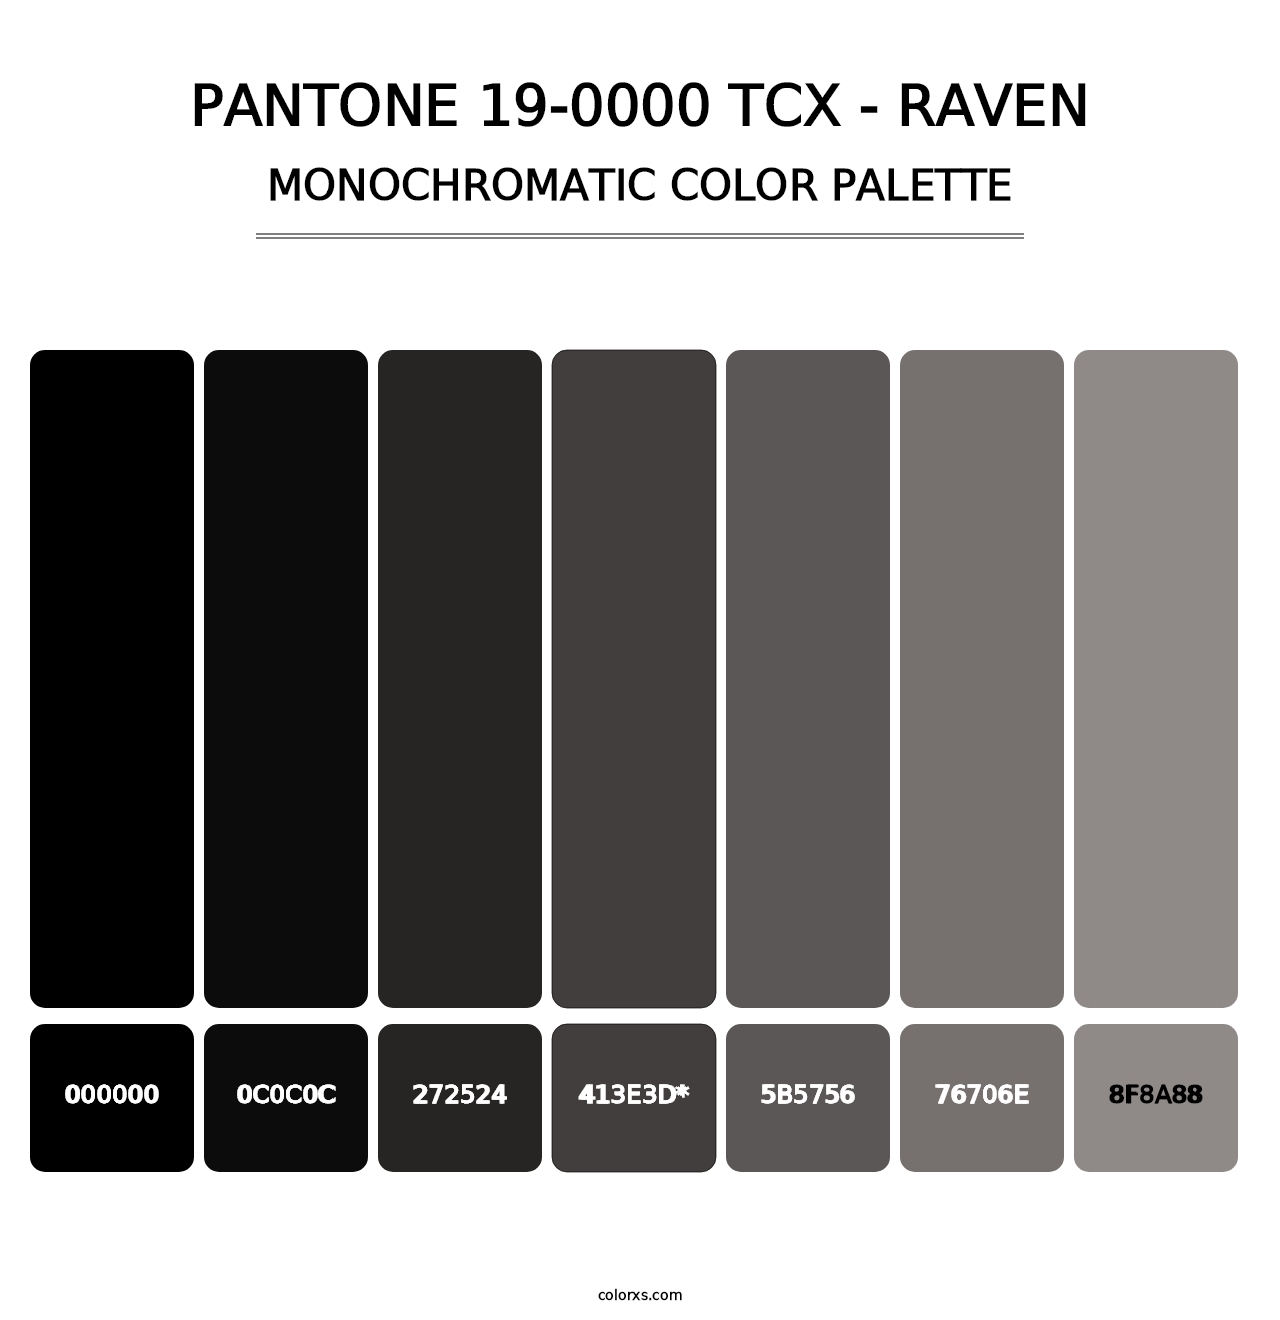 PANTONE 19-0000 TCX - Raven - Monochromatic Color Palette